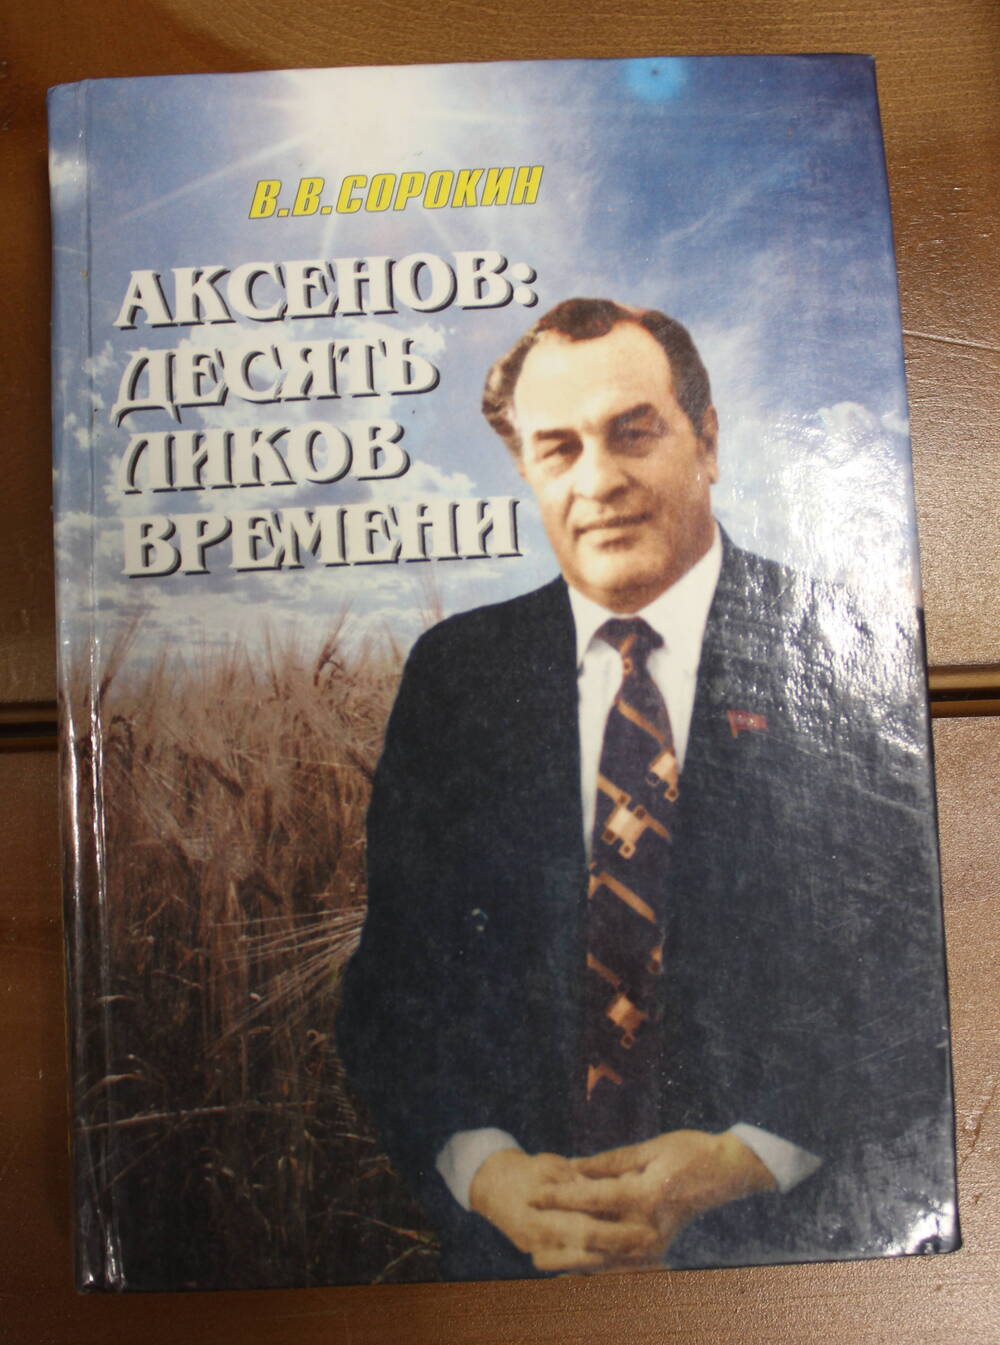 Книга Аксёнов: десять ликов времени, В.В. Сорокин, 2001г.